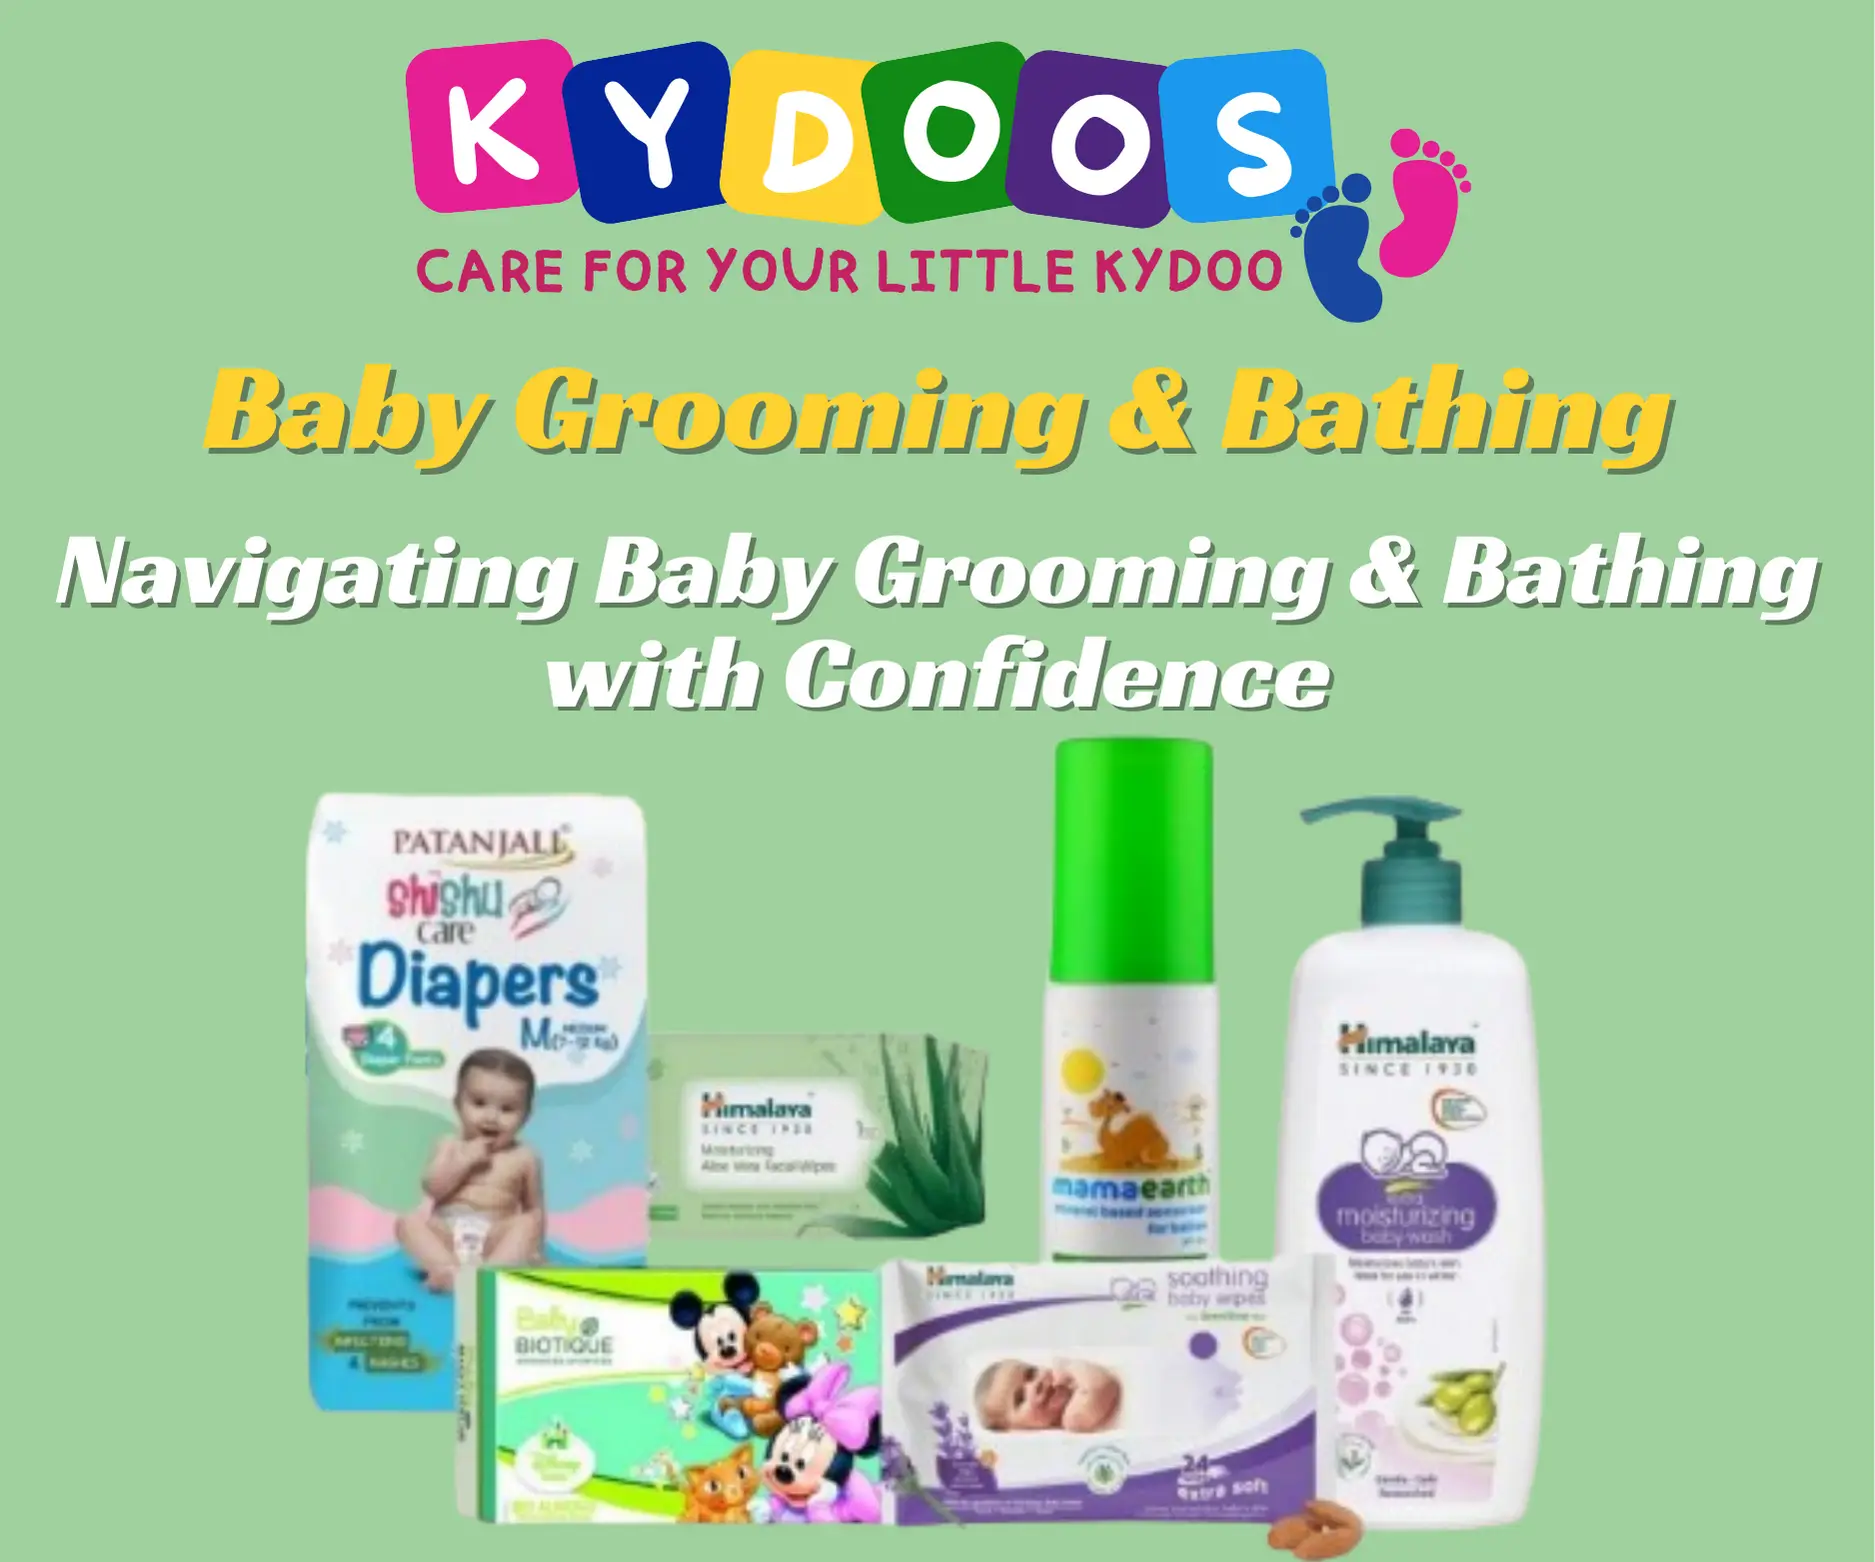 Baby Grooming & Bathing